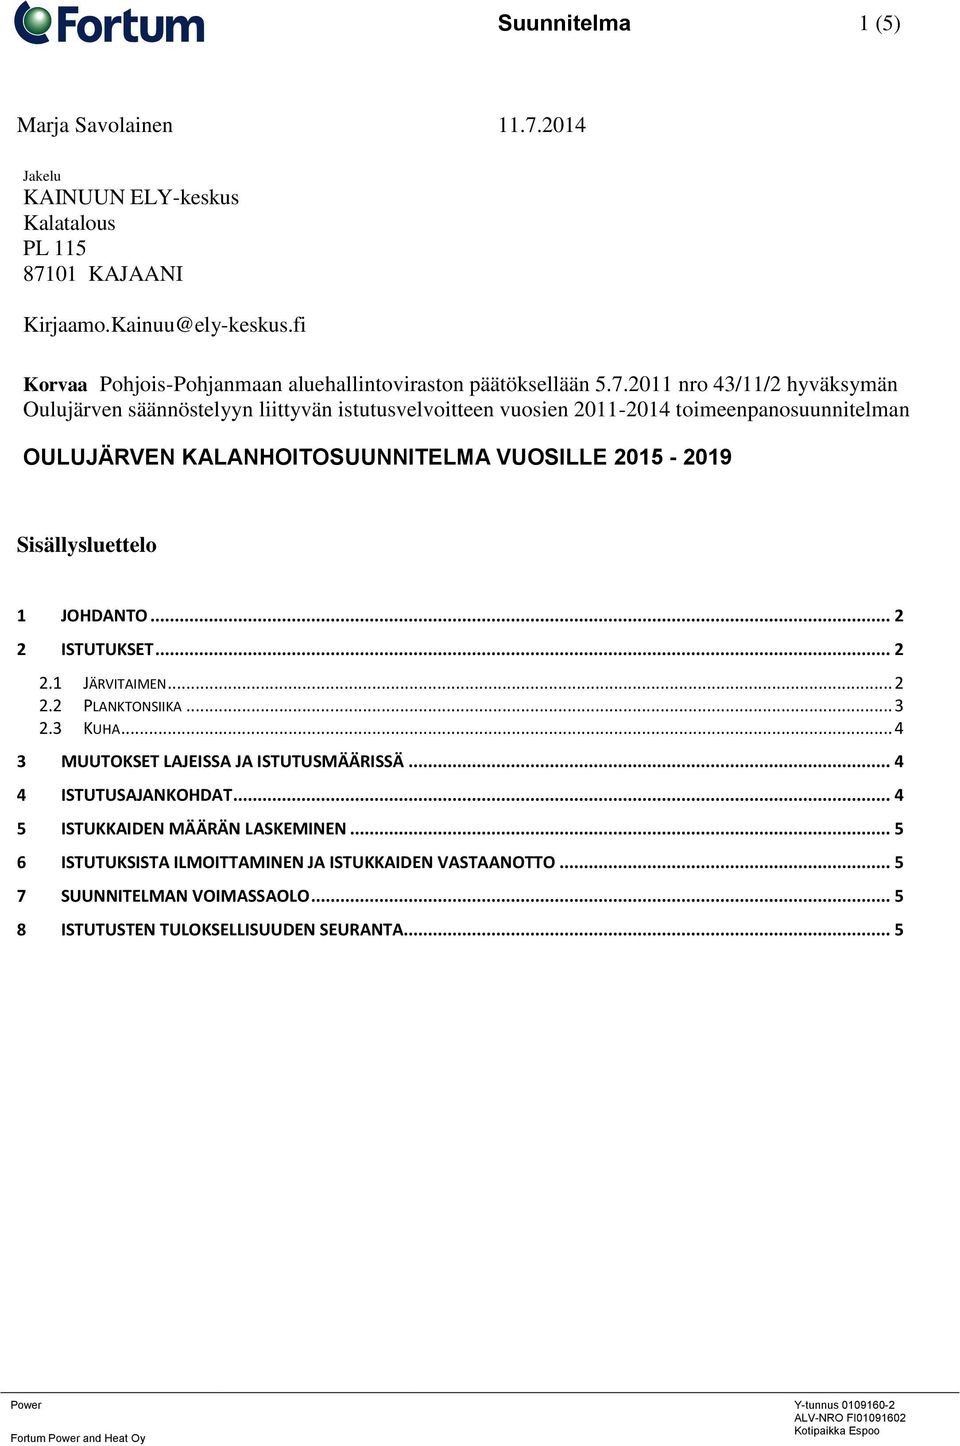 2011 nro 43/11/2 hyväksymän Oulujärven säännöstelyyn liittyvän istutusvelvoitteen vuosien 2011-2014 toimeenpanosuunnitelman OULUJÄRVEN KALANHOITOSUUNNITELMA VUOSILLE